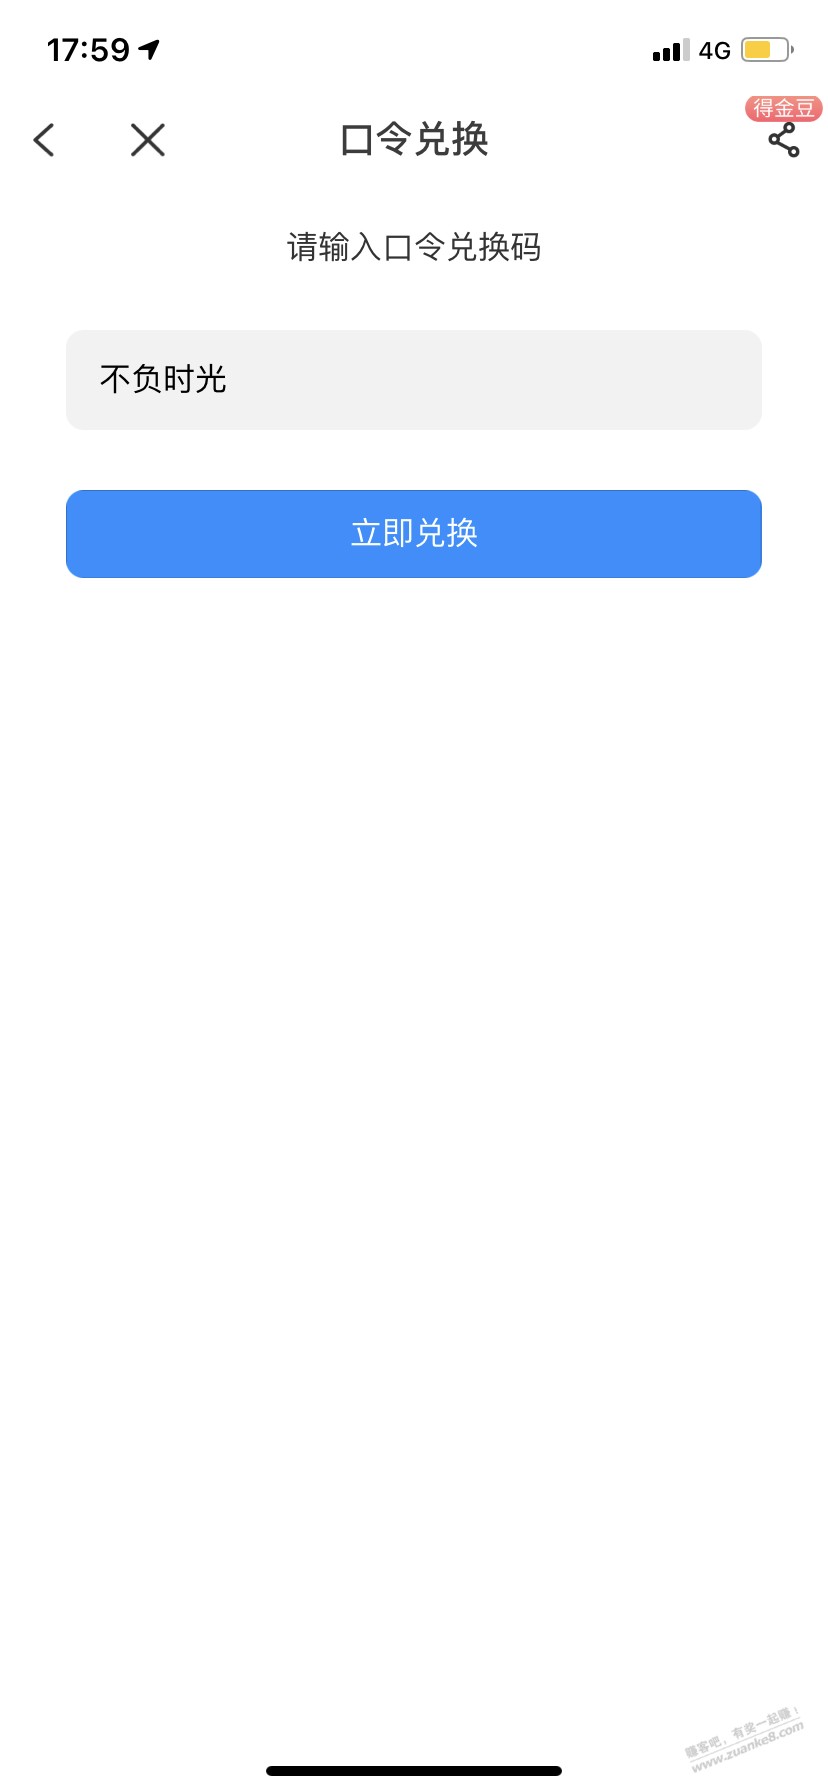 湖北电信3g流量-app奖品 口令 :不负时光